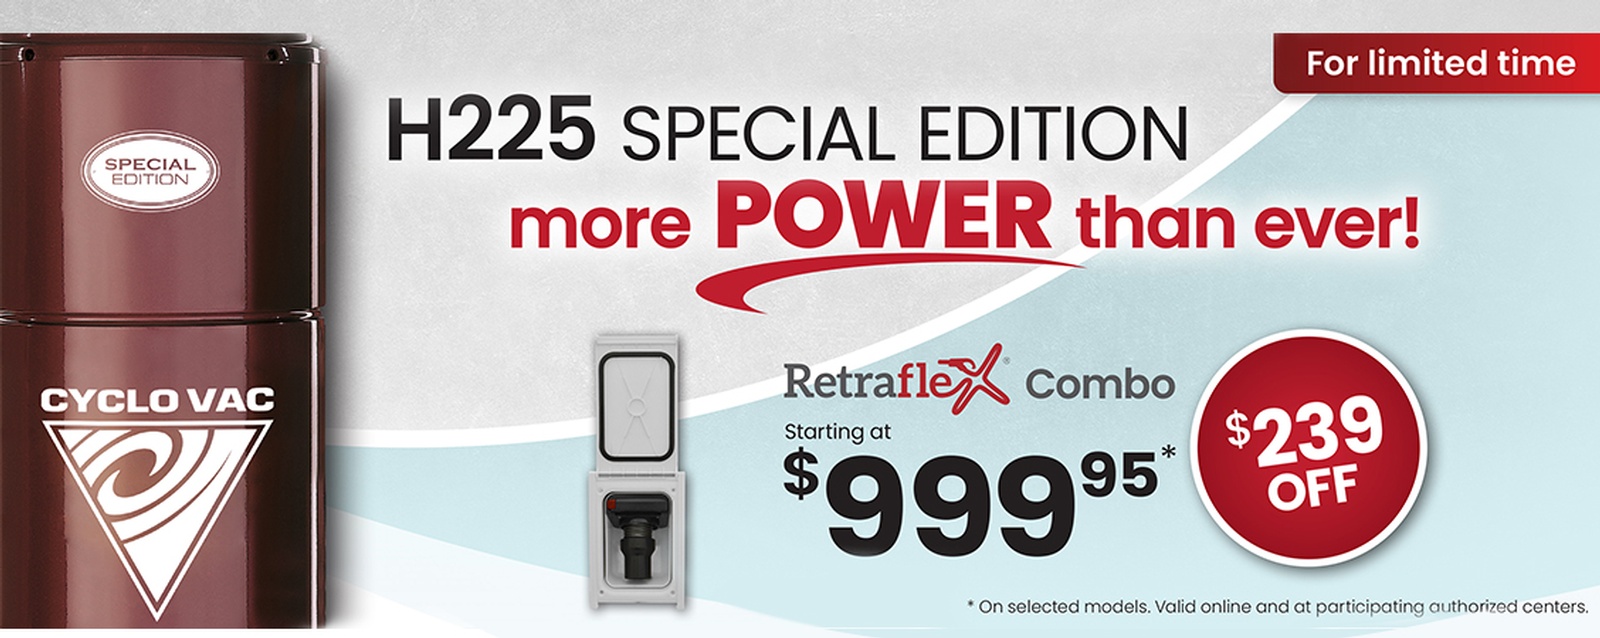 H225 Special Edition + Retraflex